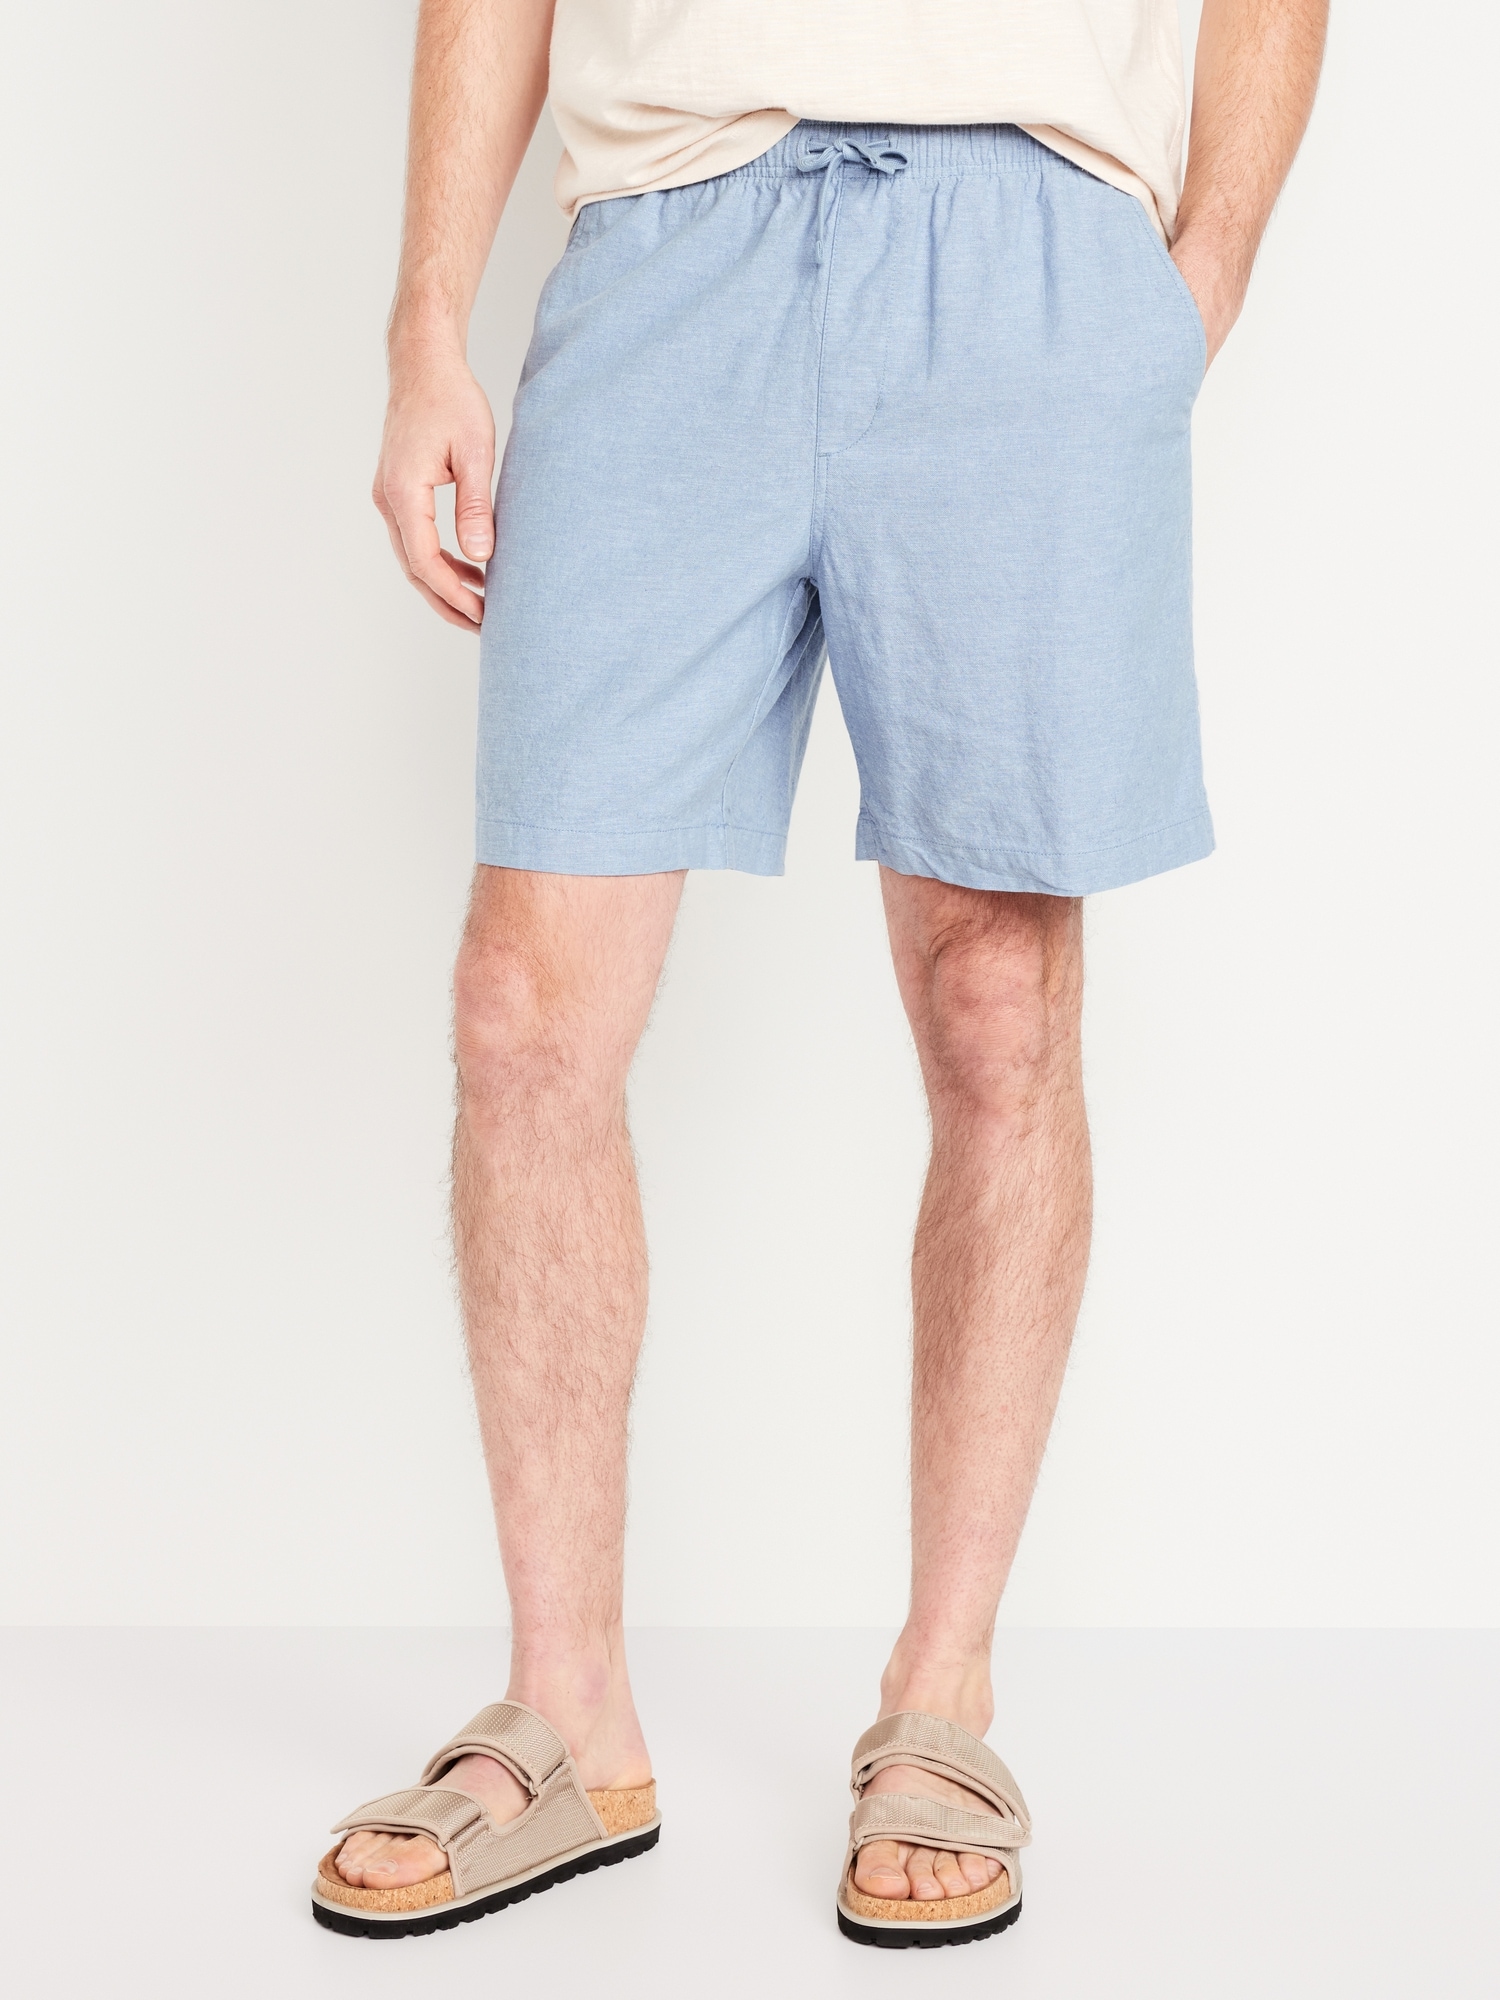 Blue Linen Shorts for Men